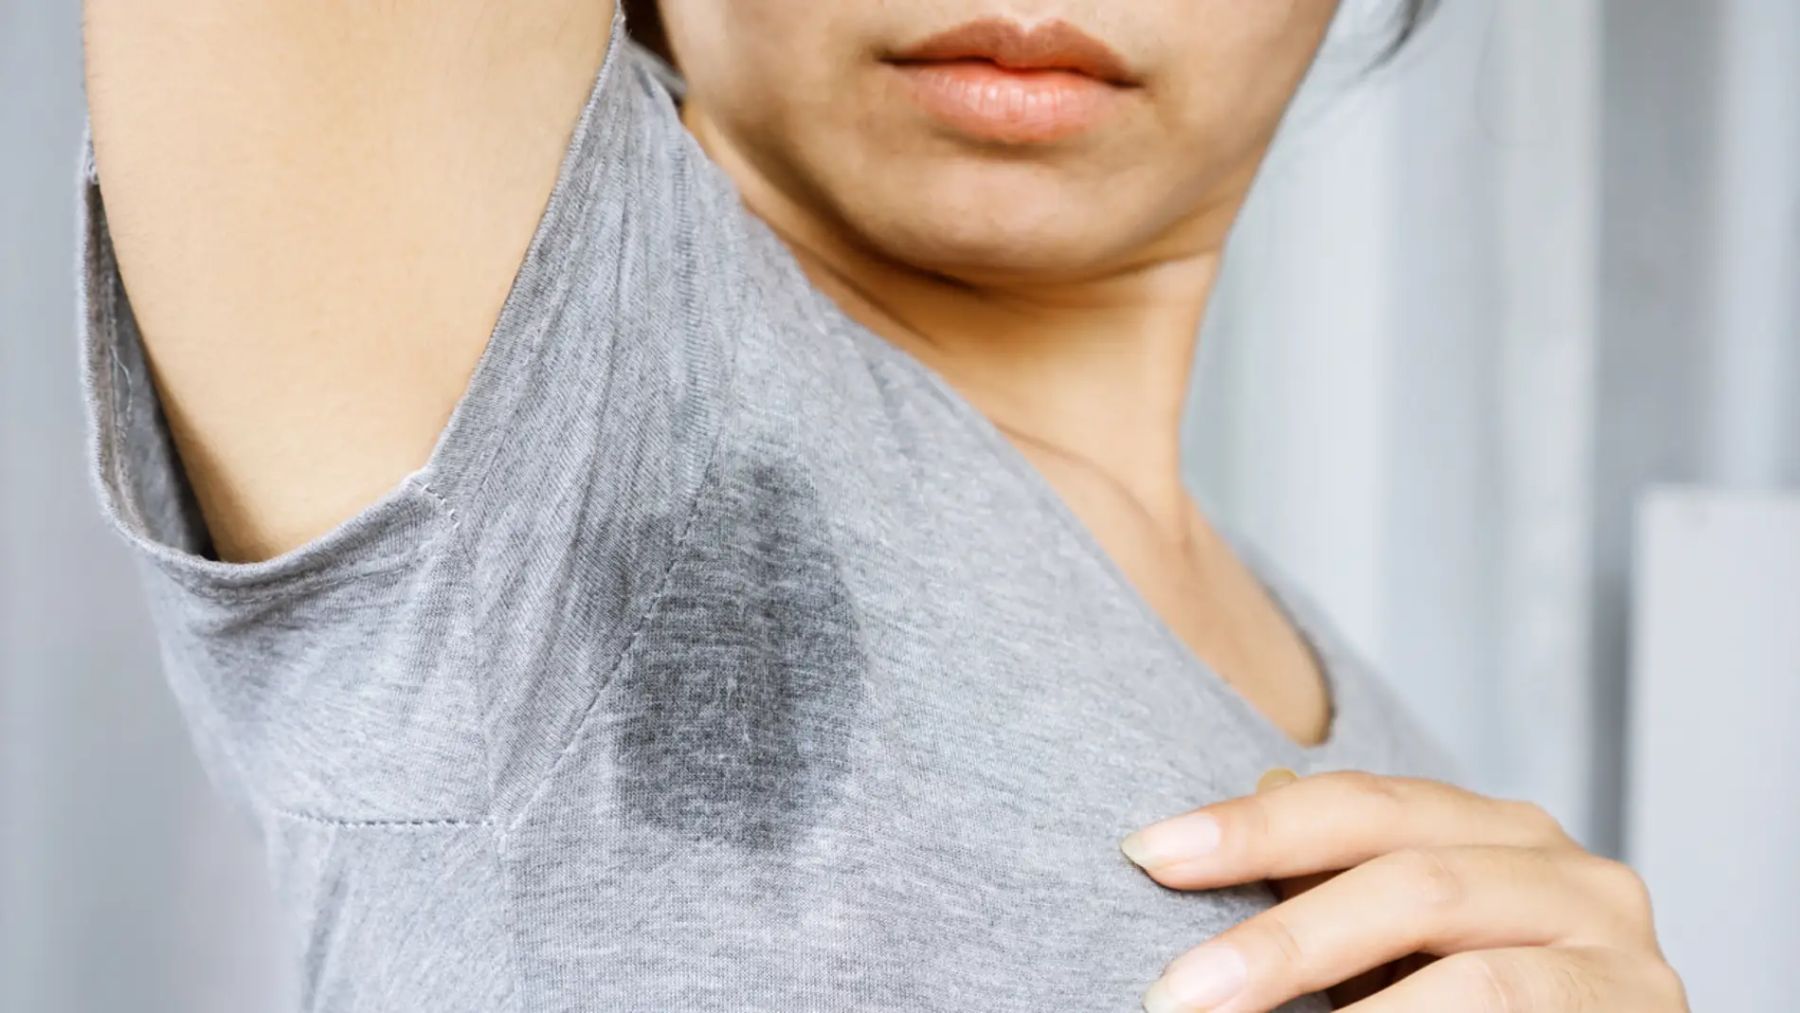 La hiperhidrosis en términos médicos se entiende como el exceso de sudoración.